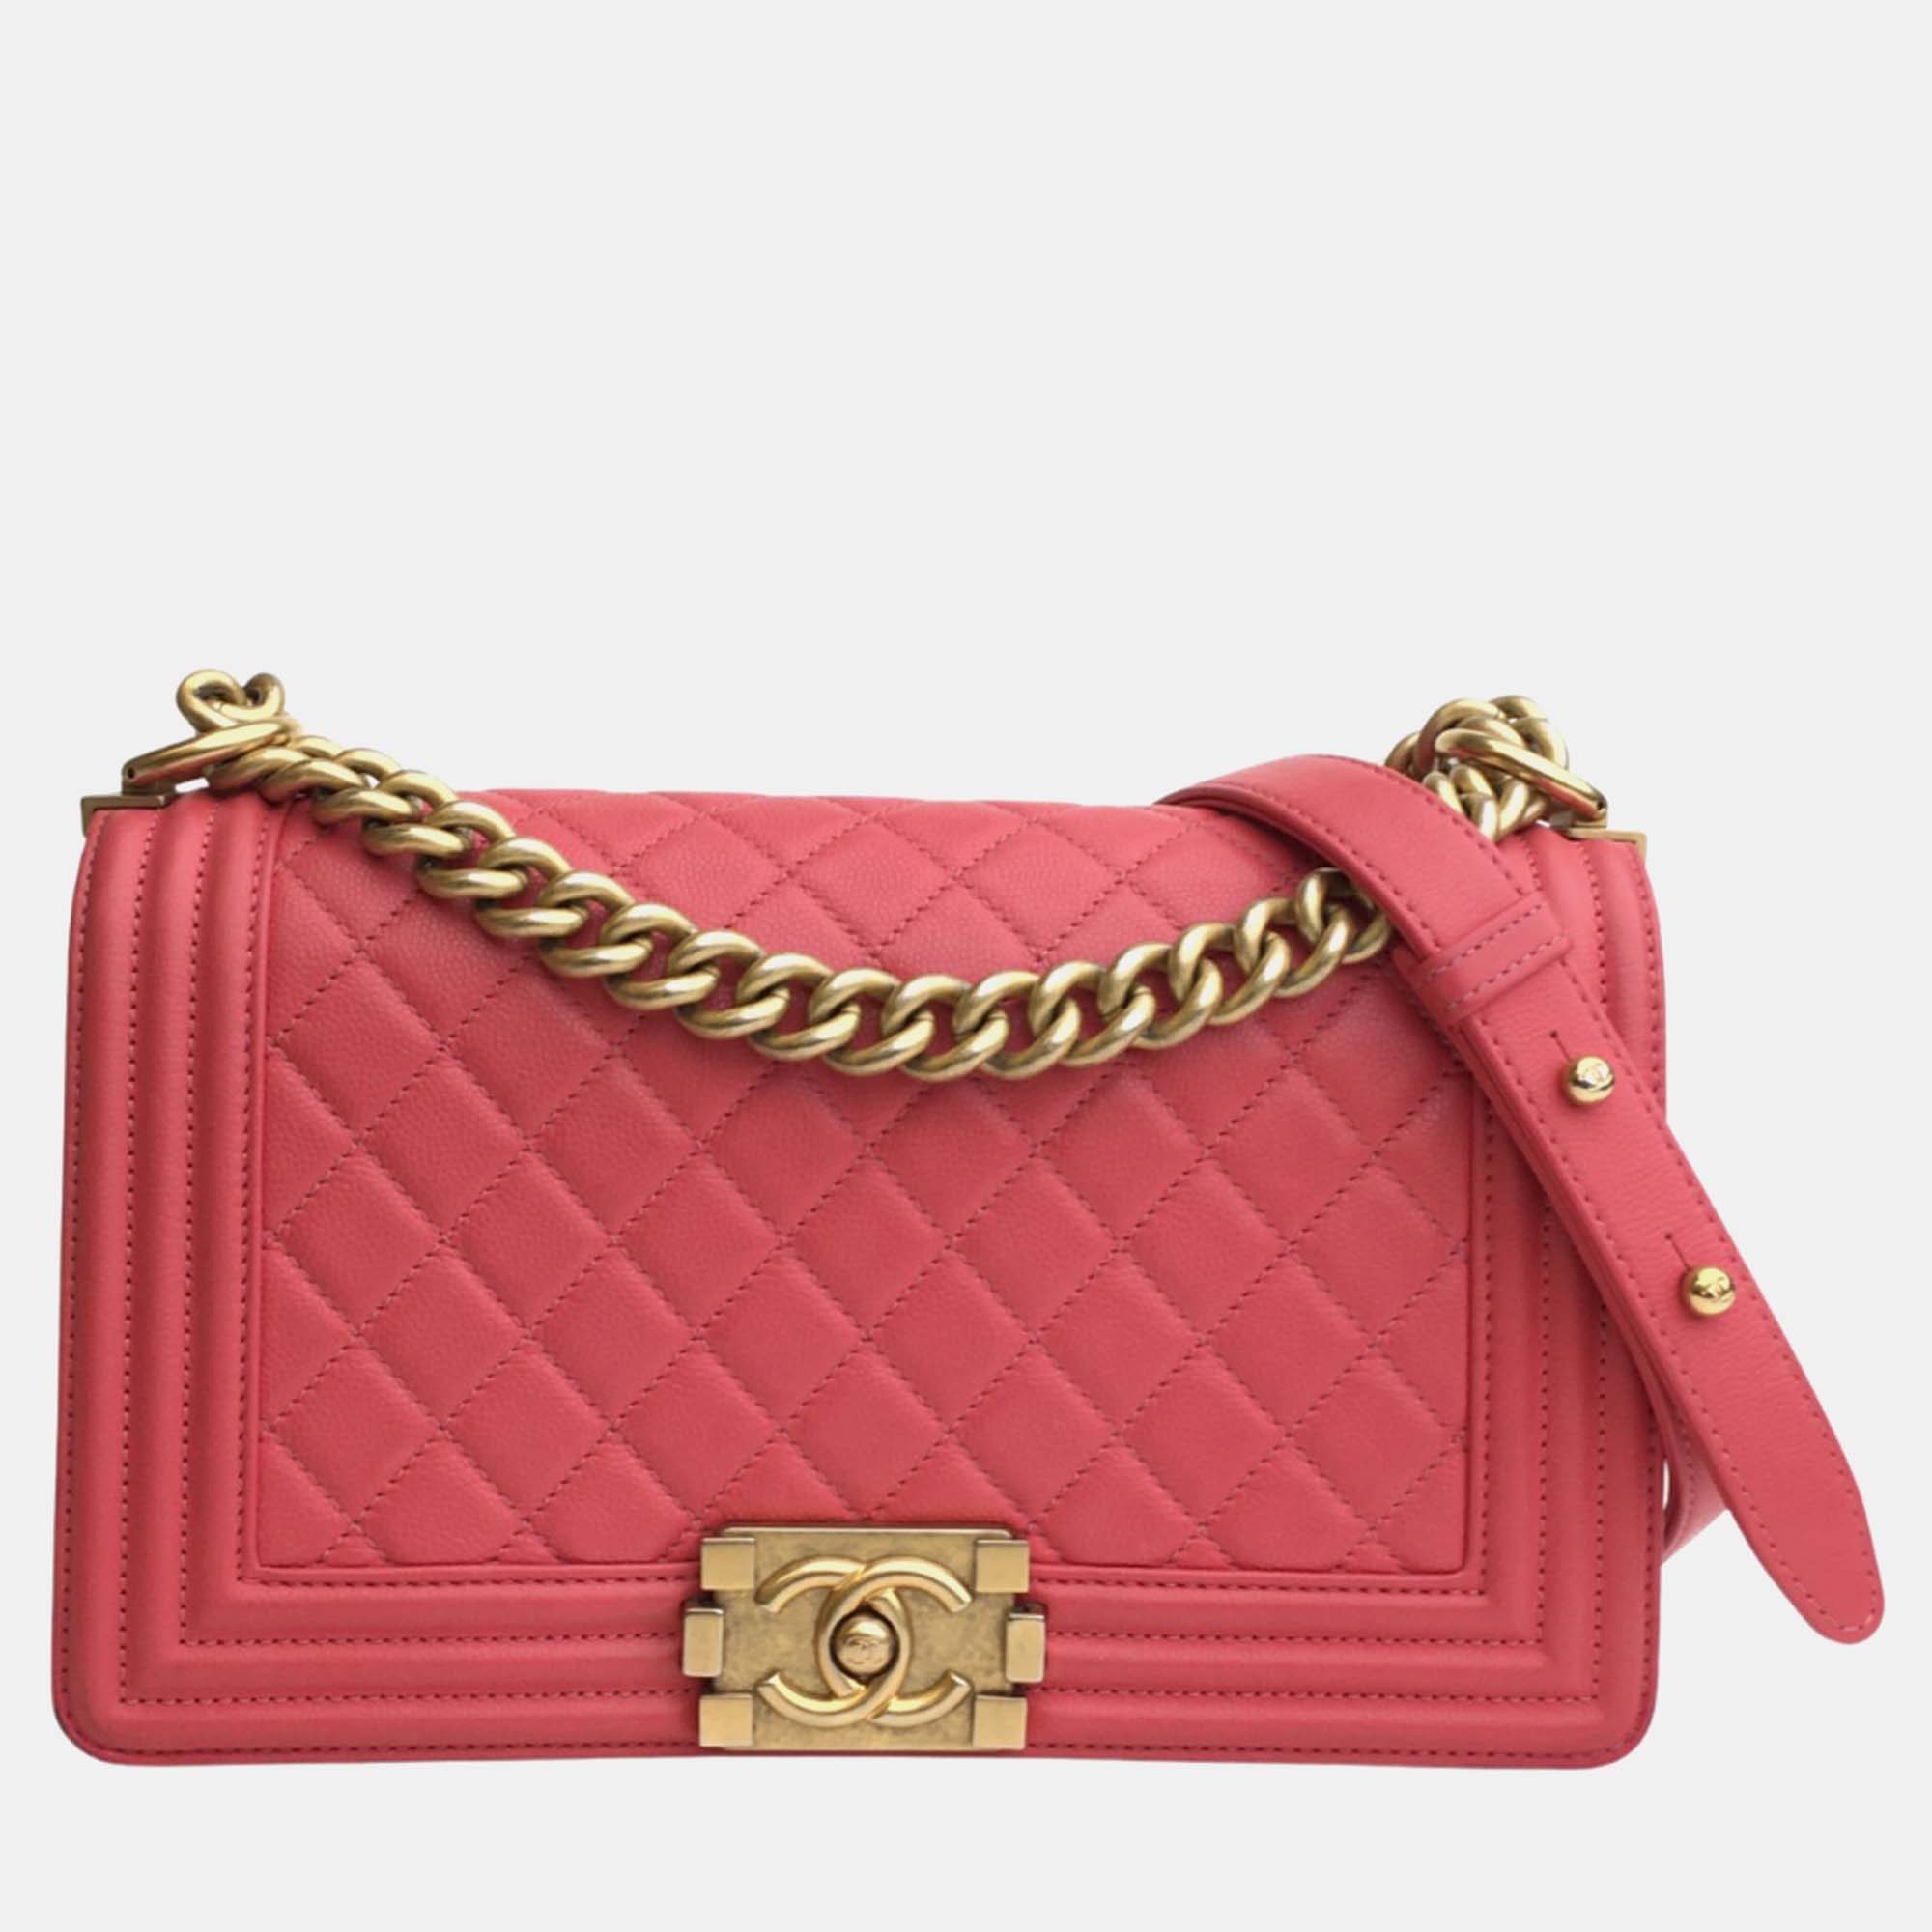 Chanel pink leather quilted medium boy shoulder bag